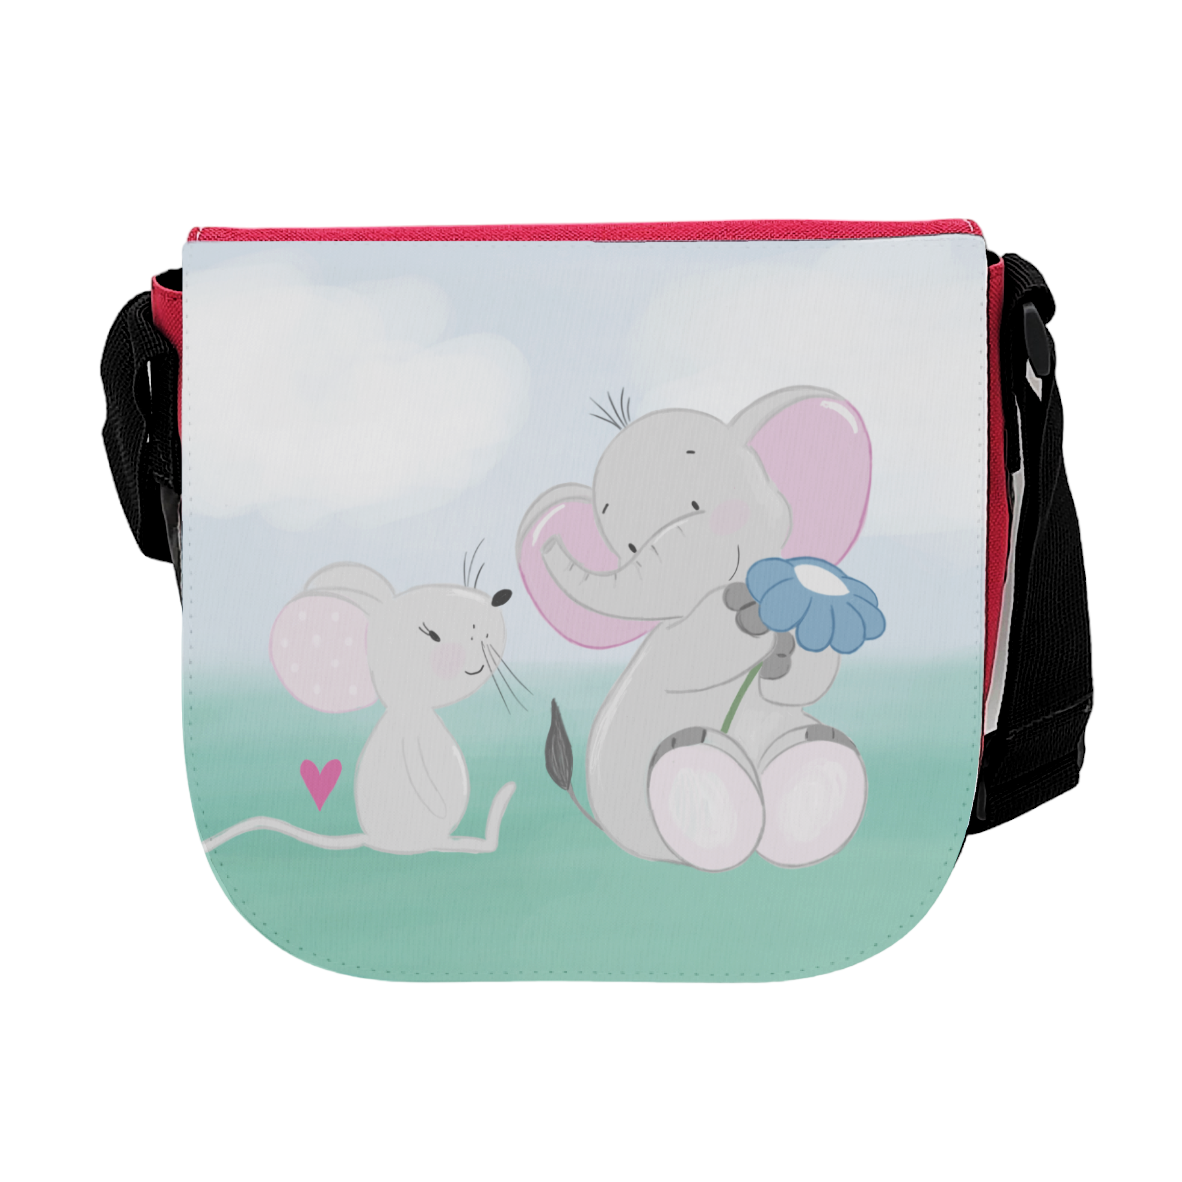 Kindergartentasche "Elefant & Maus", pink